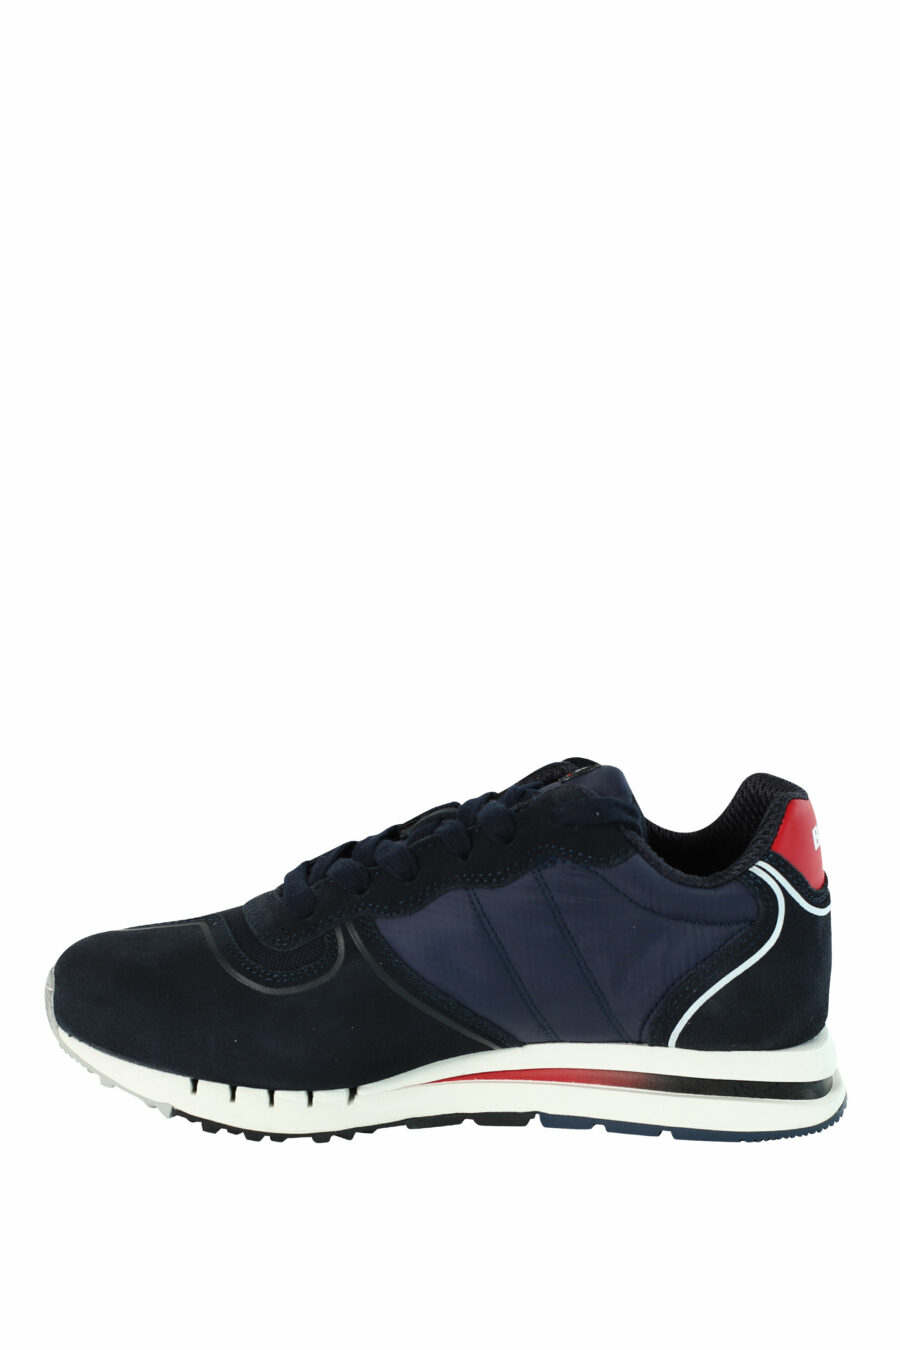 Zapatillas "QUARTZ" azules con detalles rojos - 8058156499454 3